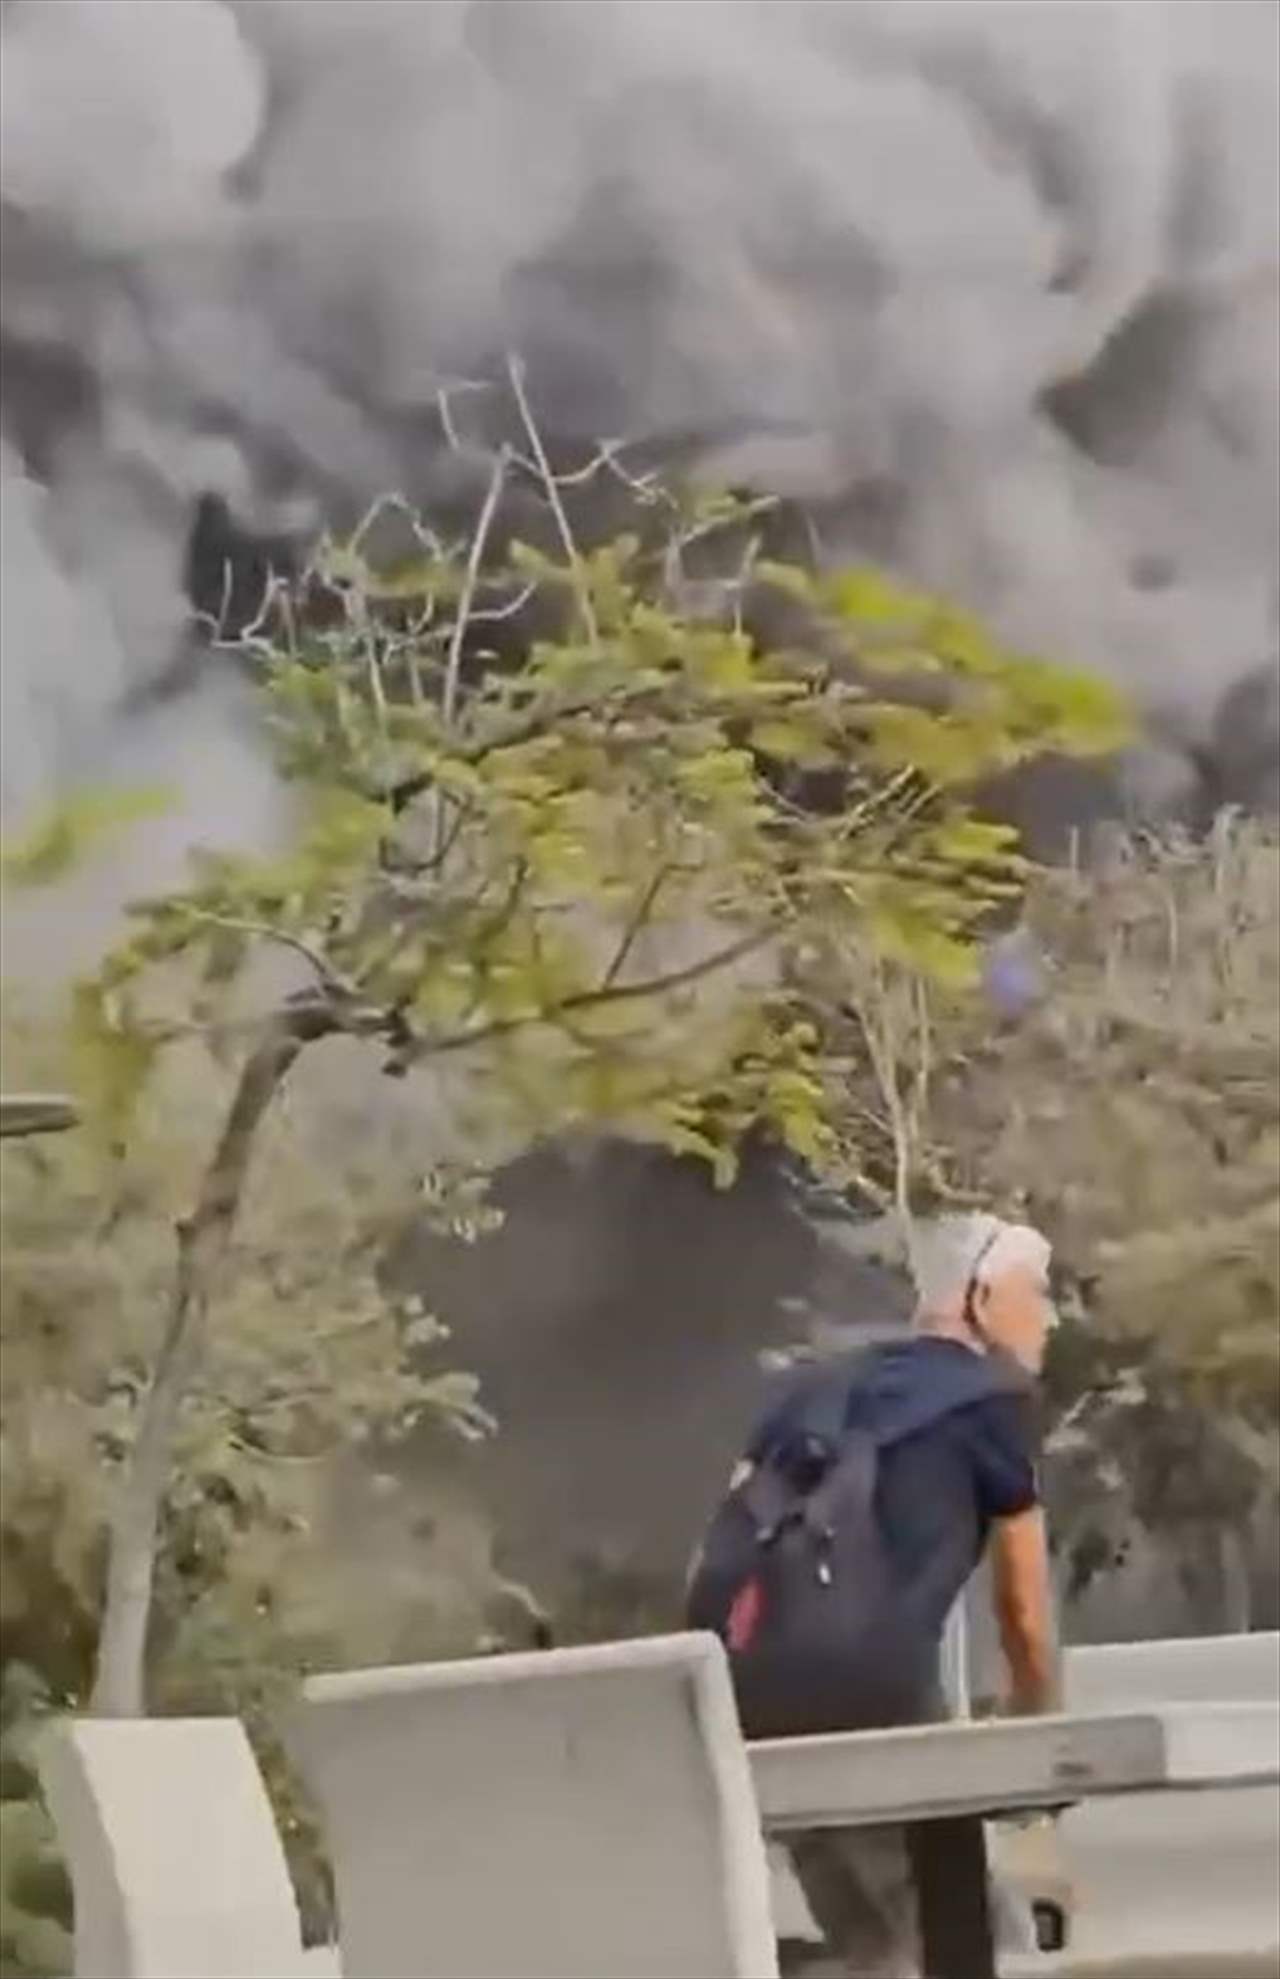 بالفيديو - لحظة سقوط أحد الصواريخ من غزة على هرتسليا جنوب فلسطين المحتلة